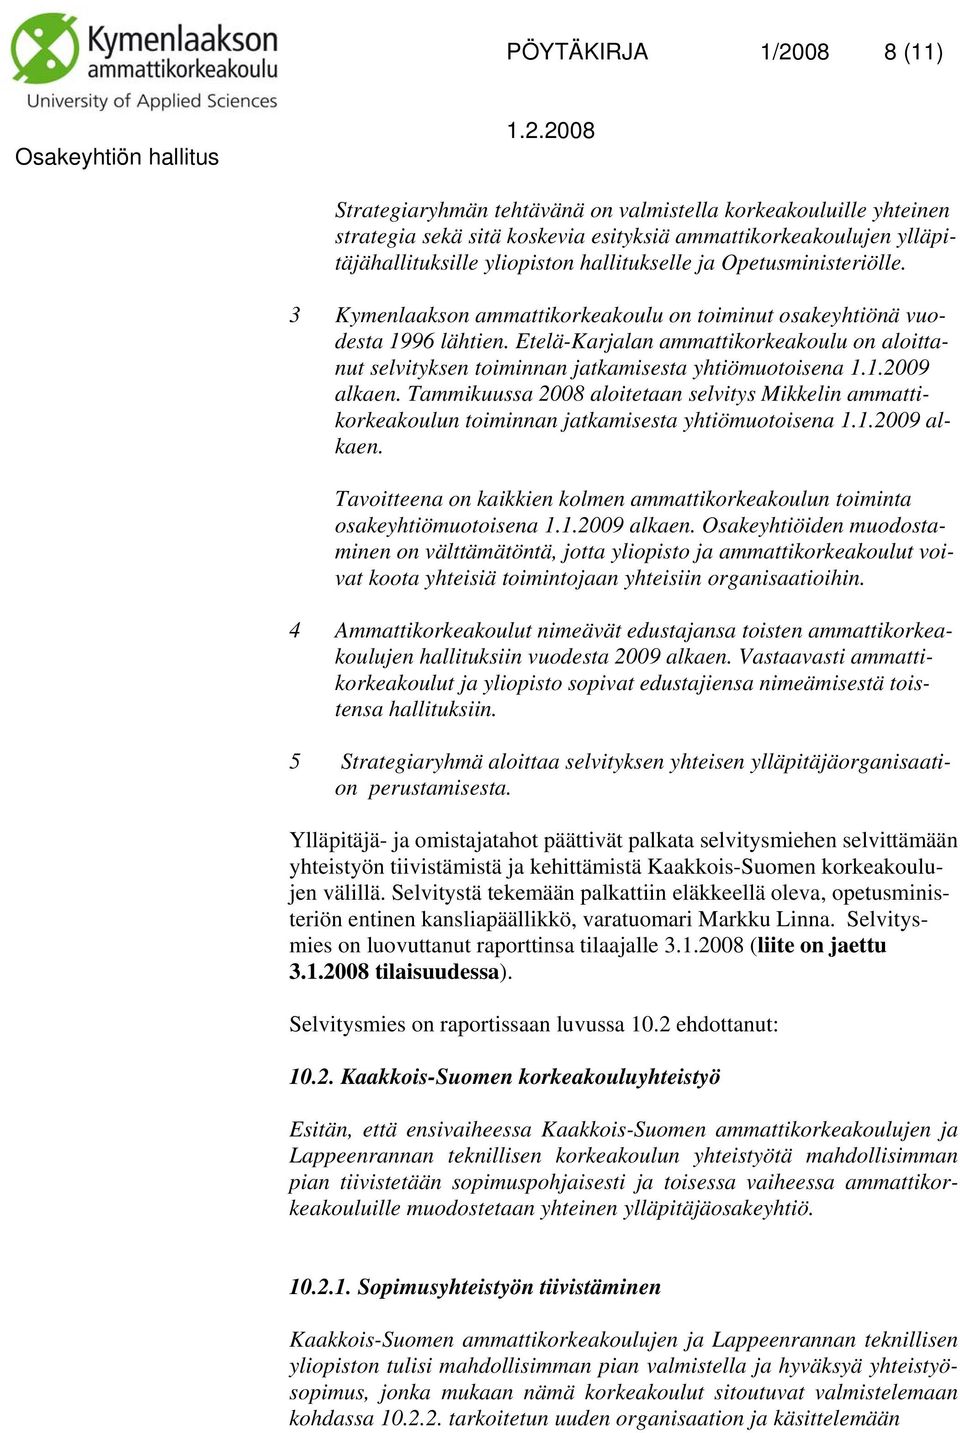 Etelä-Karjalan ammattikorkeakoulu on aloittanut selvityksen toiminnan jatkamisesta yhtiömuotoisena 1.1.2009 alkaen.